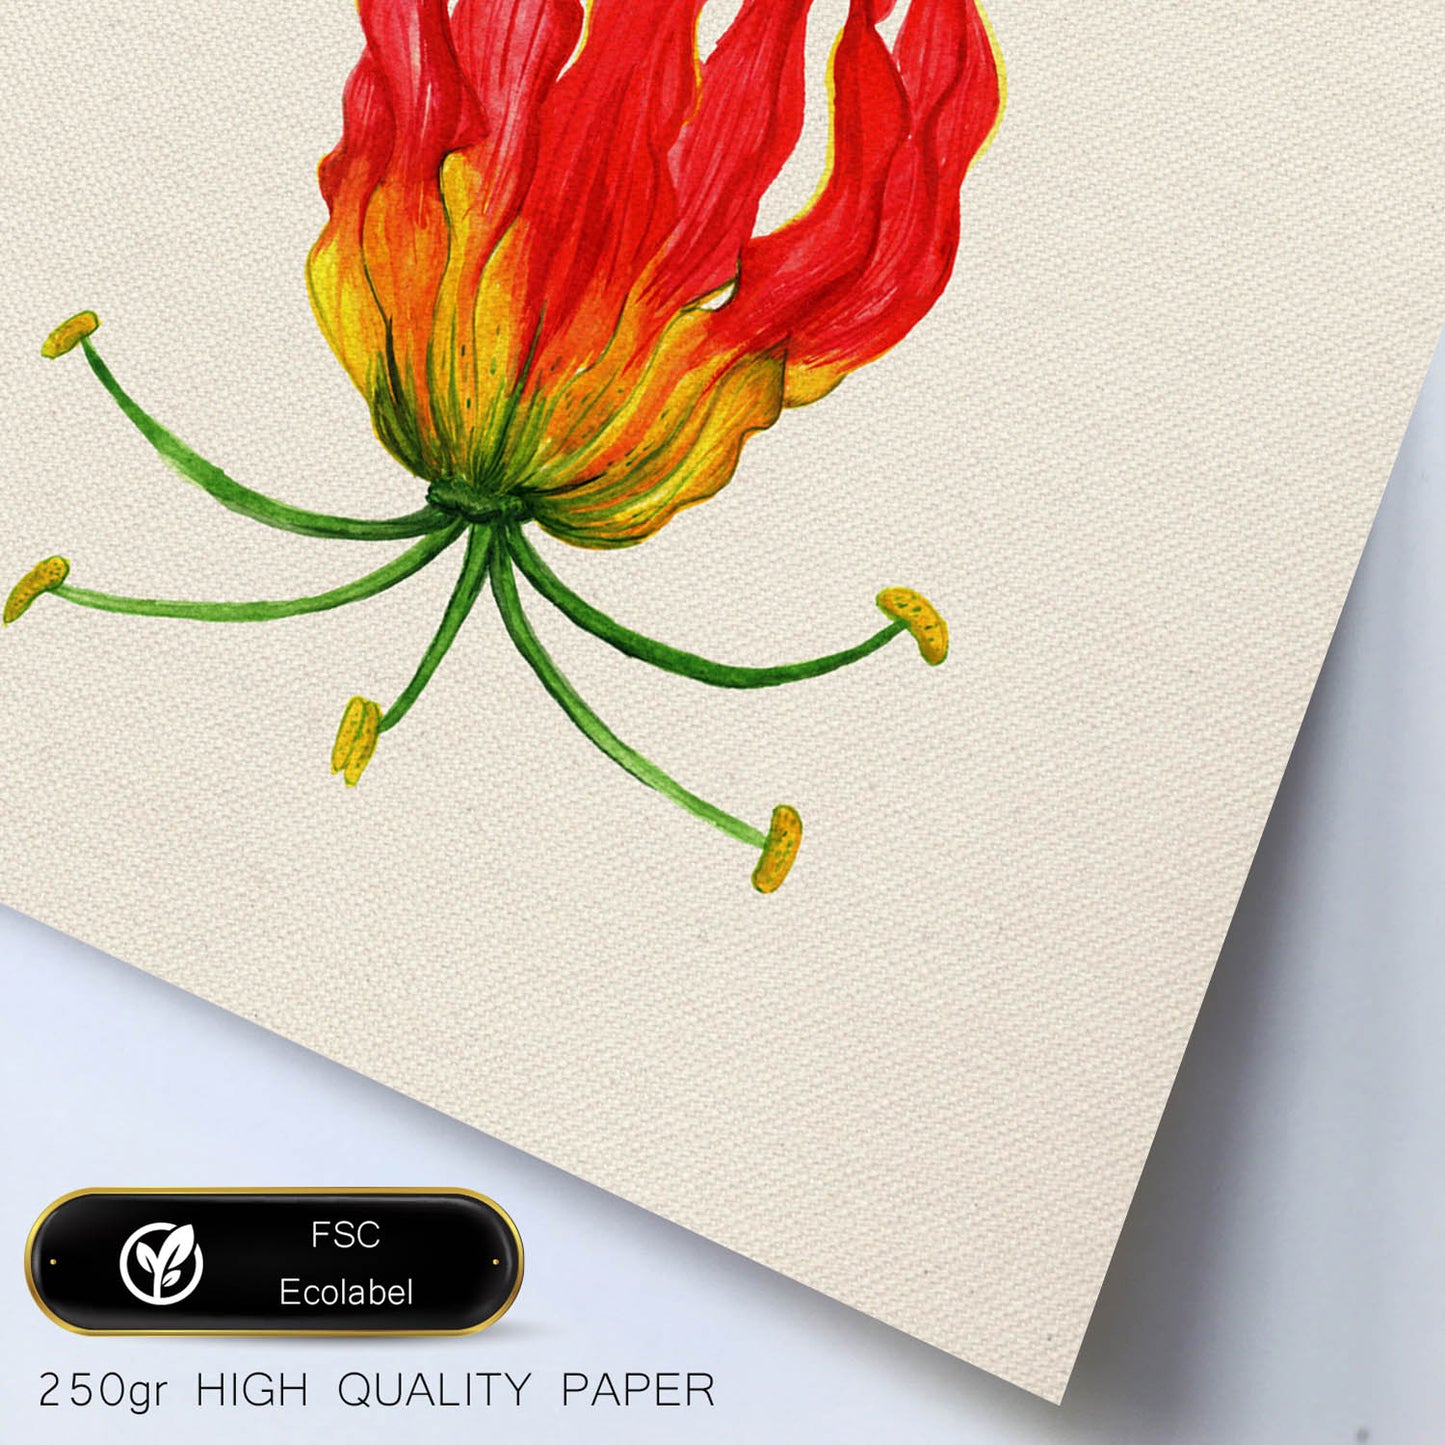 Poster de flores y naturaleza. Lámina cuadrada Flor de fuego, ilustrada con dibujos a color.-Artwork-Nacnic-Nacnic Estudio SL